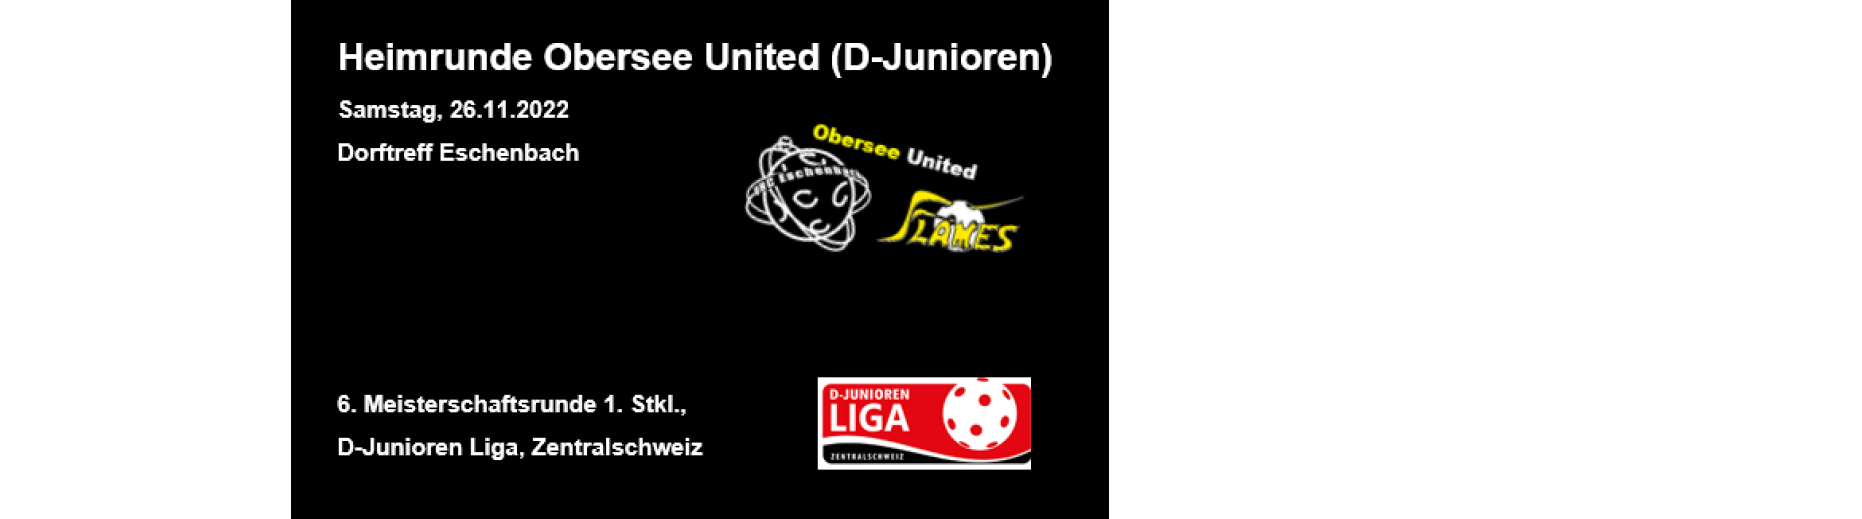 D-Junioren Obersee United mit Heimturnier in Eschenbach